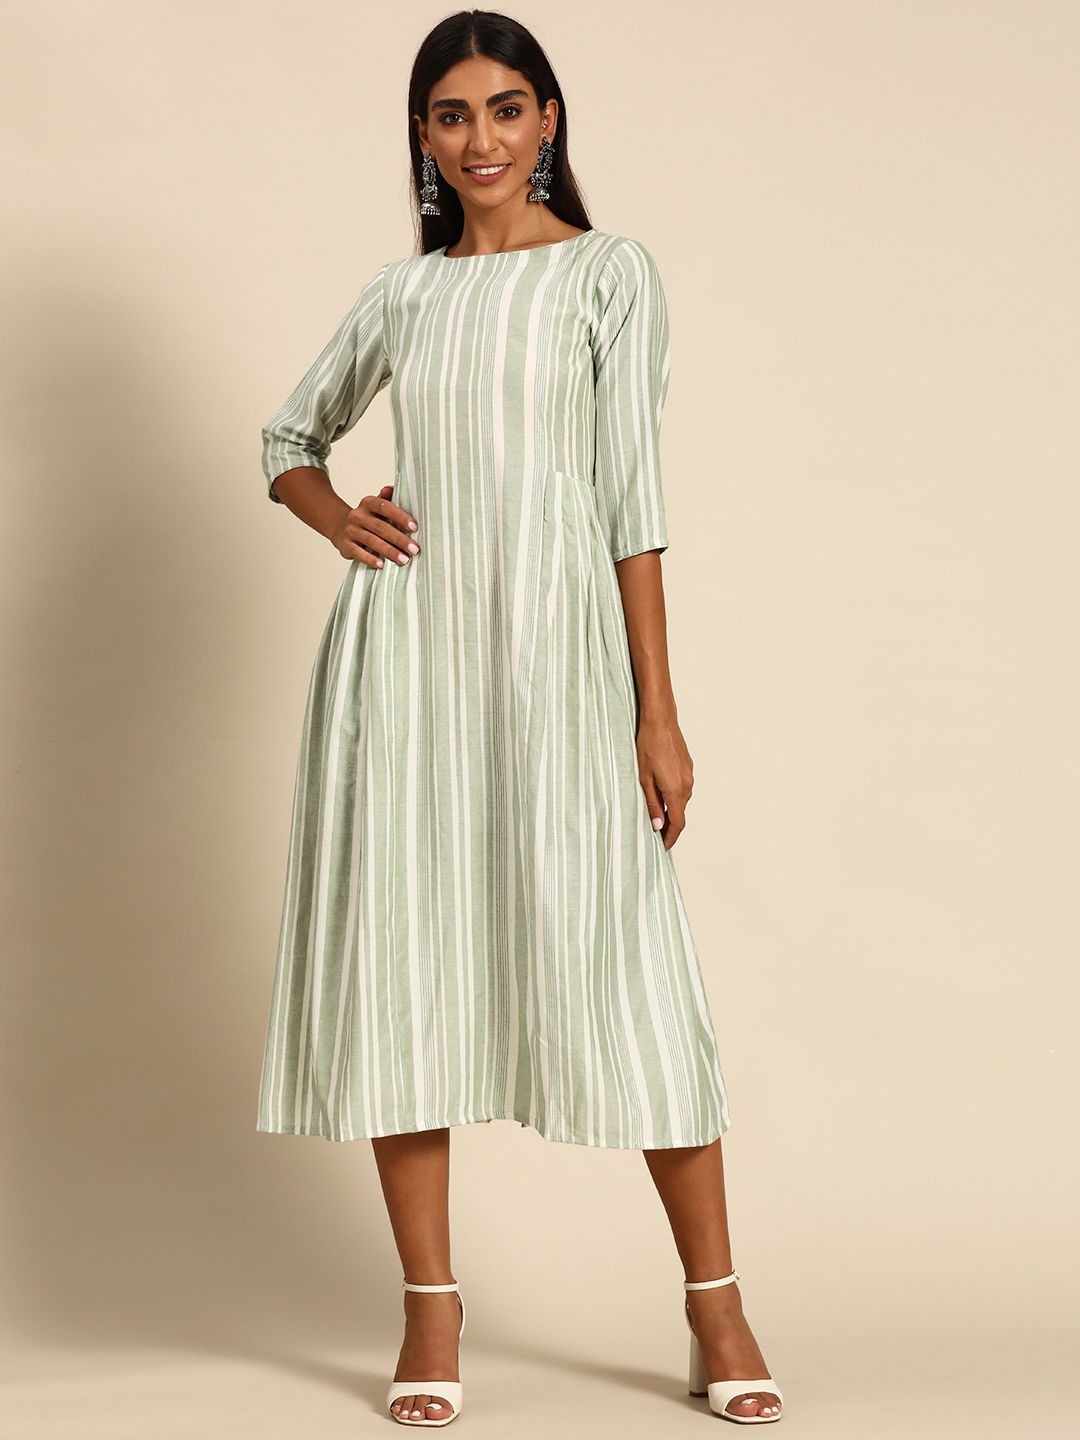 GERUA Green & White Striped Cotton A-Line Midi Dress Price in India